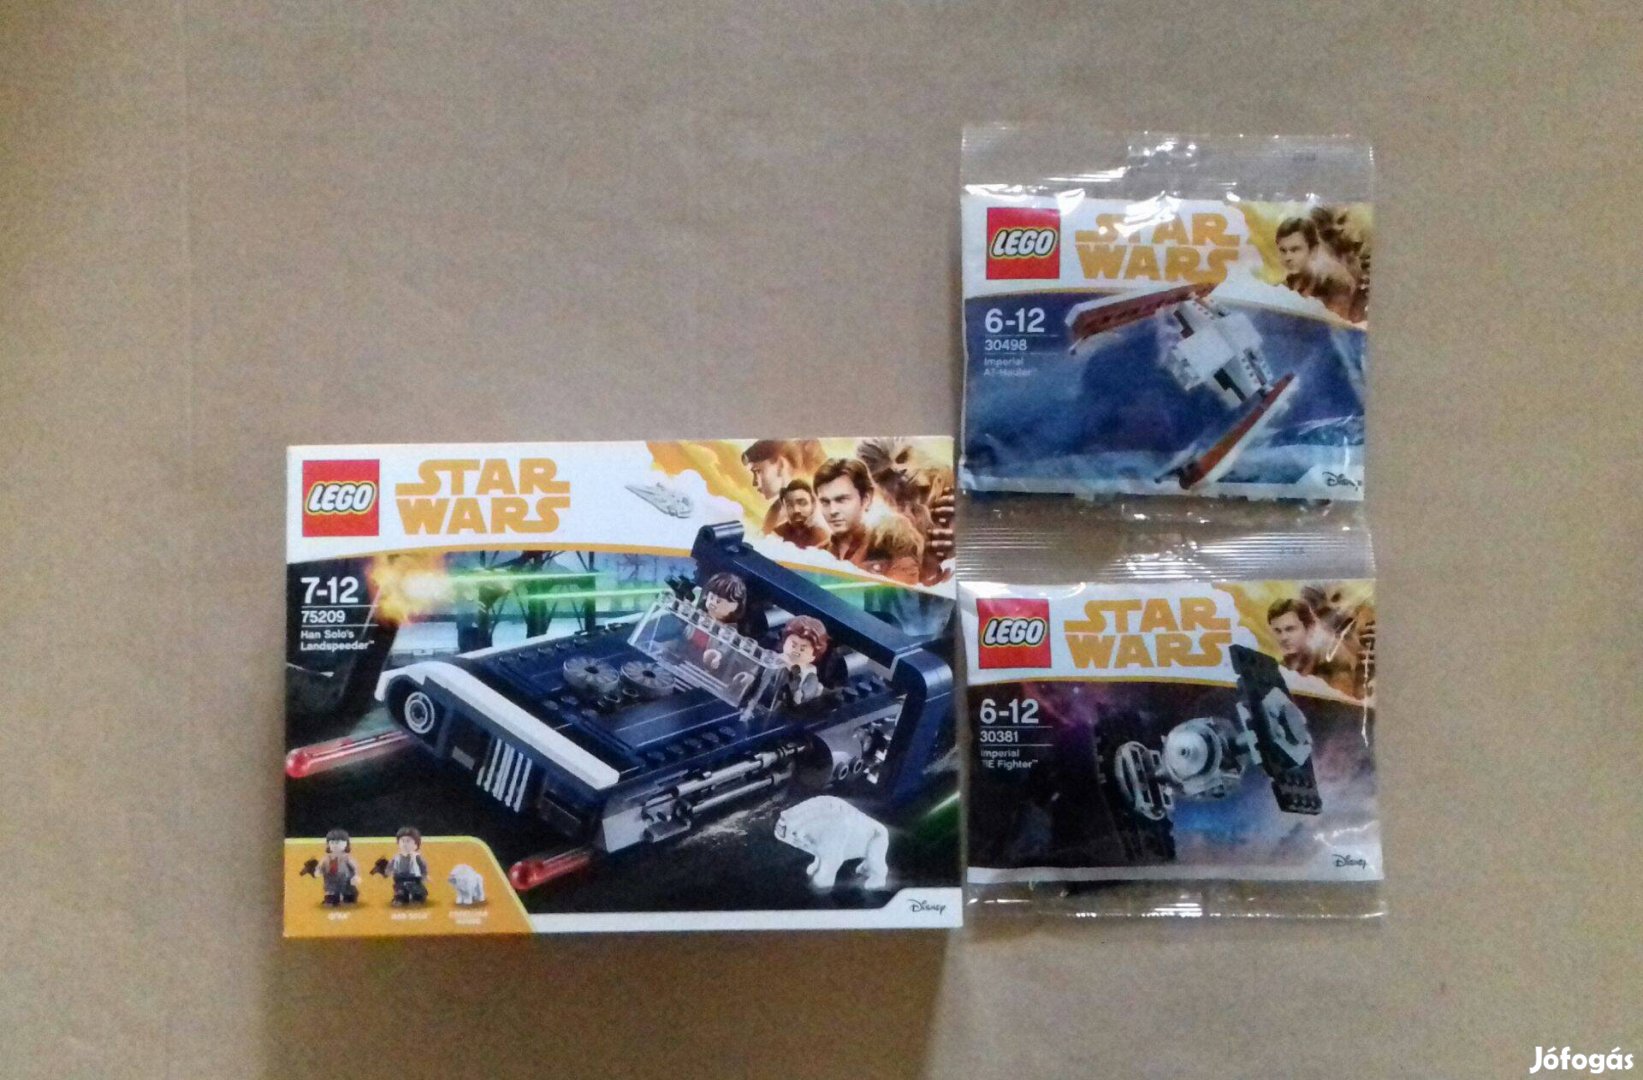 Solo új Star Wars LEGO 75209 Han terepsiklója + 30381 + 30498 Fox.árba